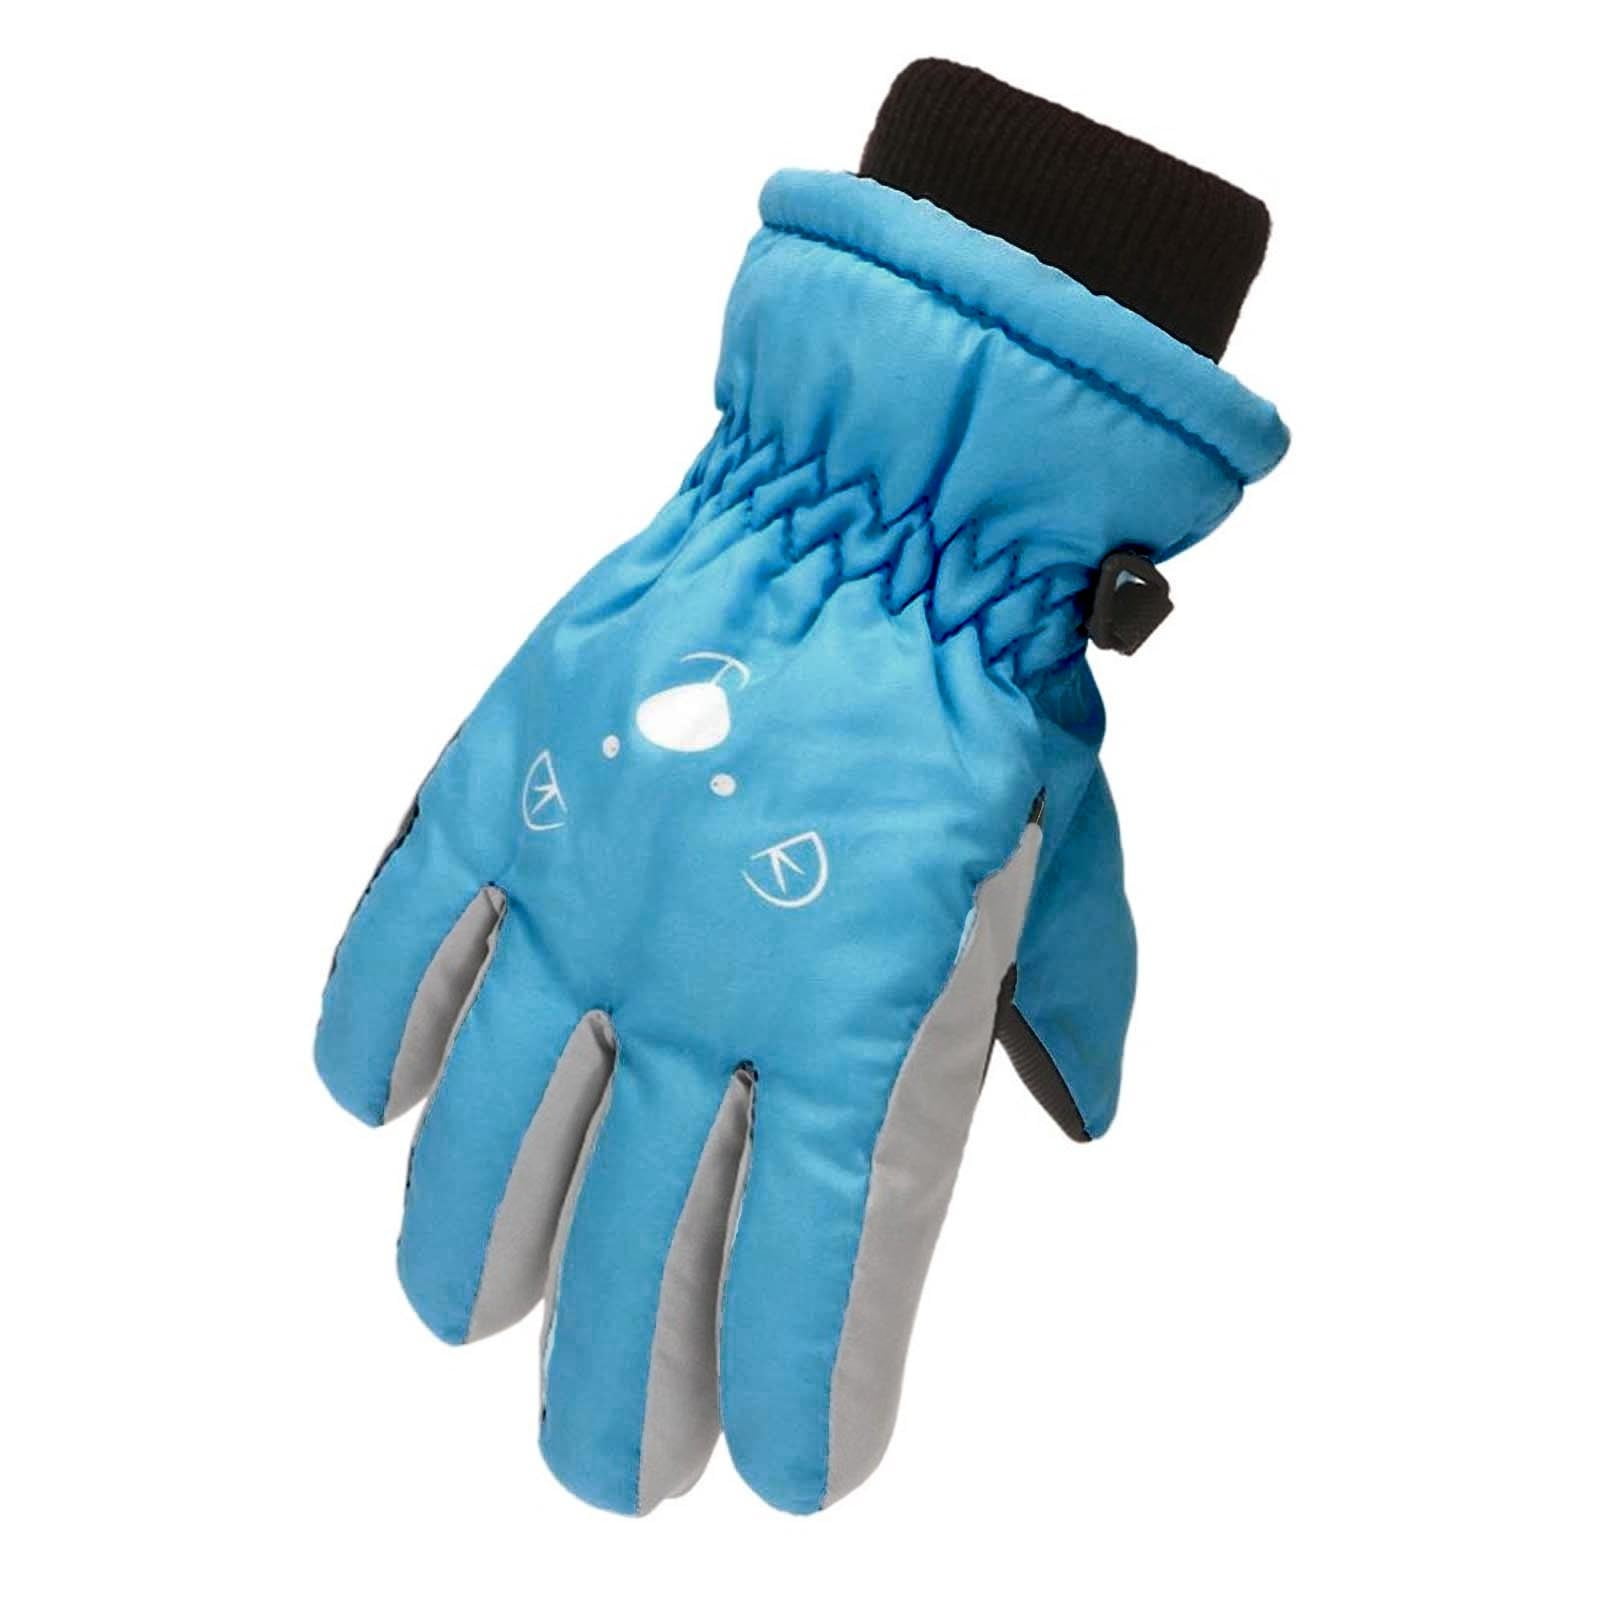 Kids Snow Mittens Unisex Waterproof Ski Mitten Winter Warm Gloves for Boys Girls 